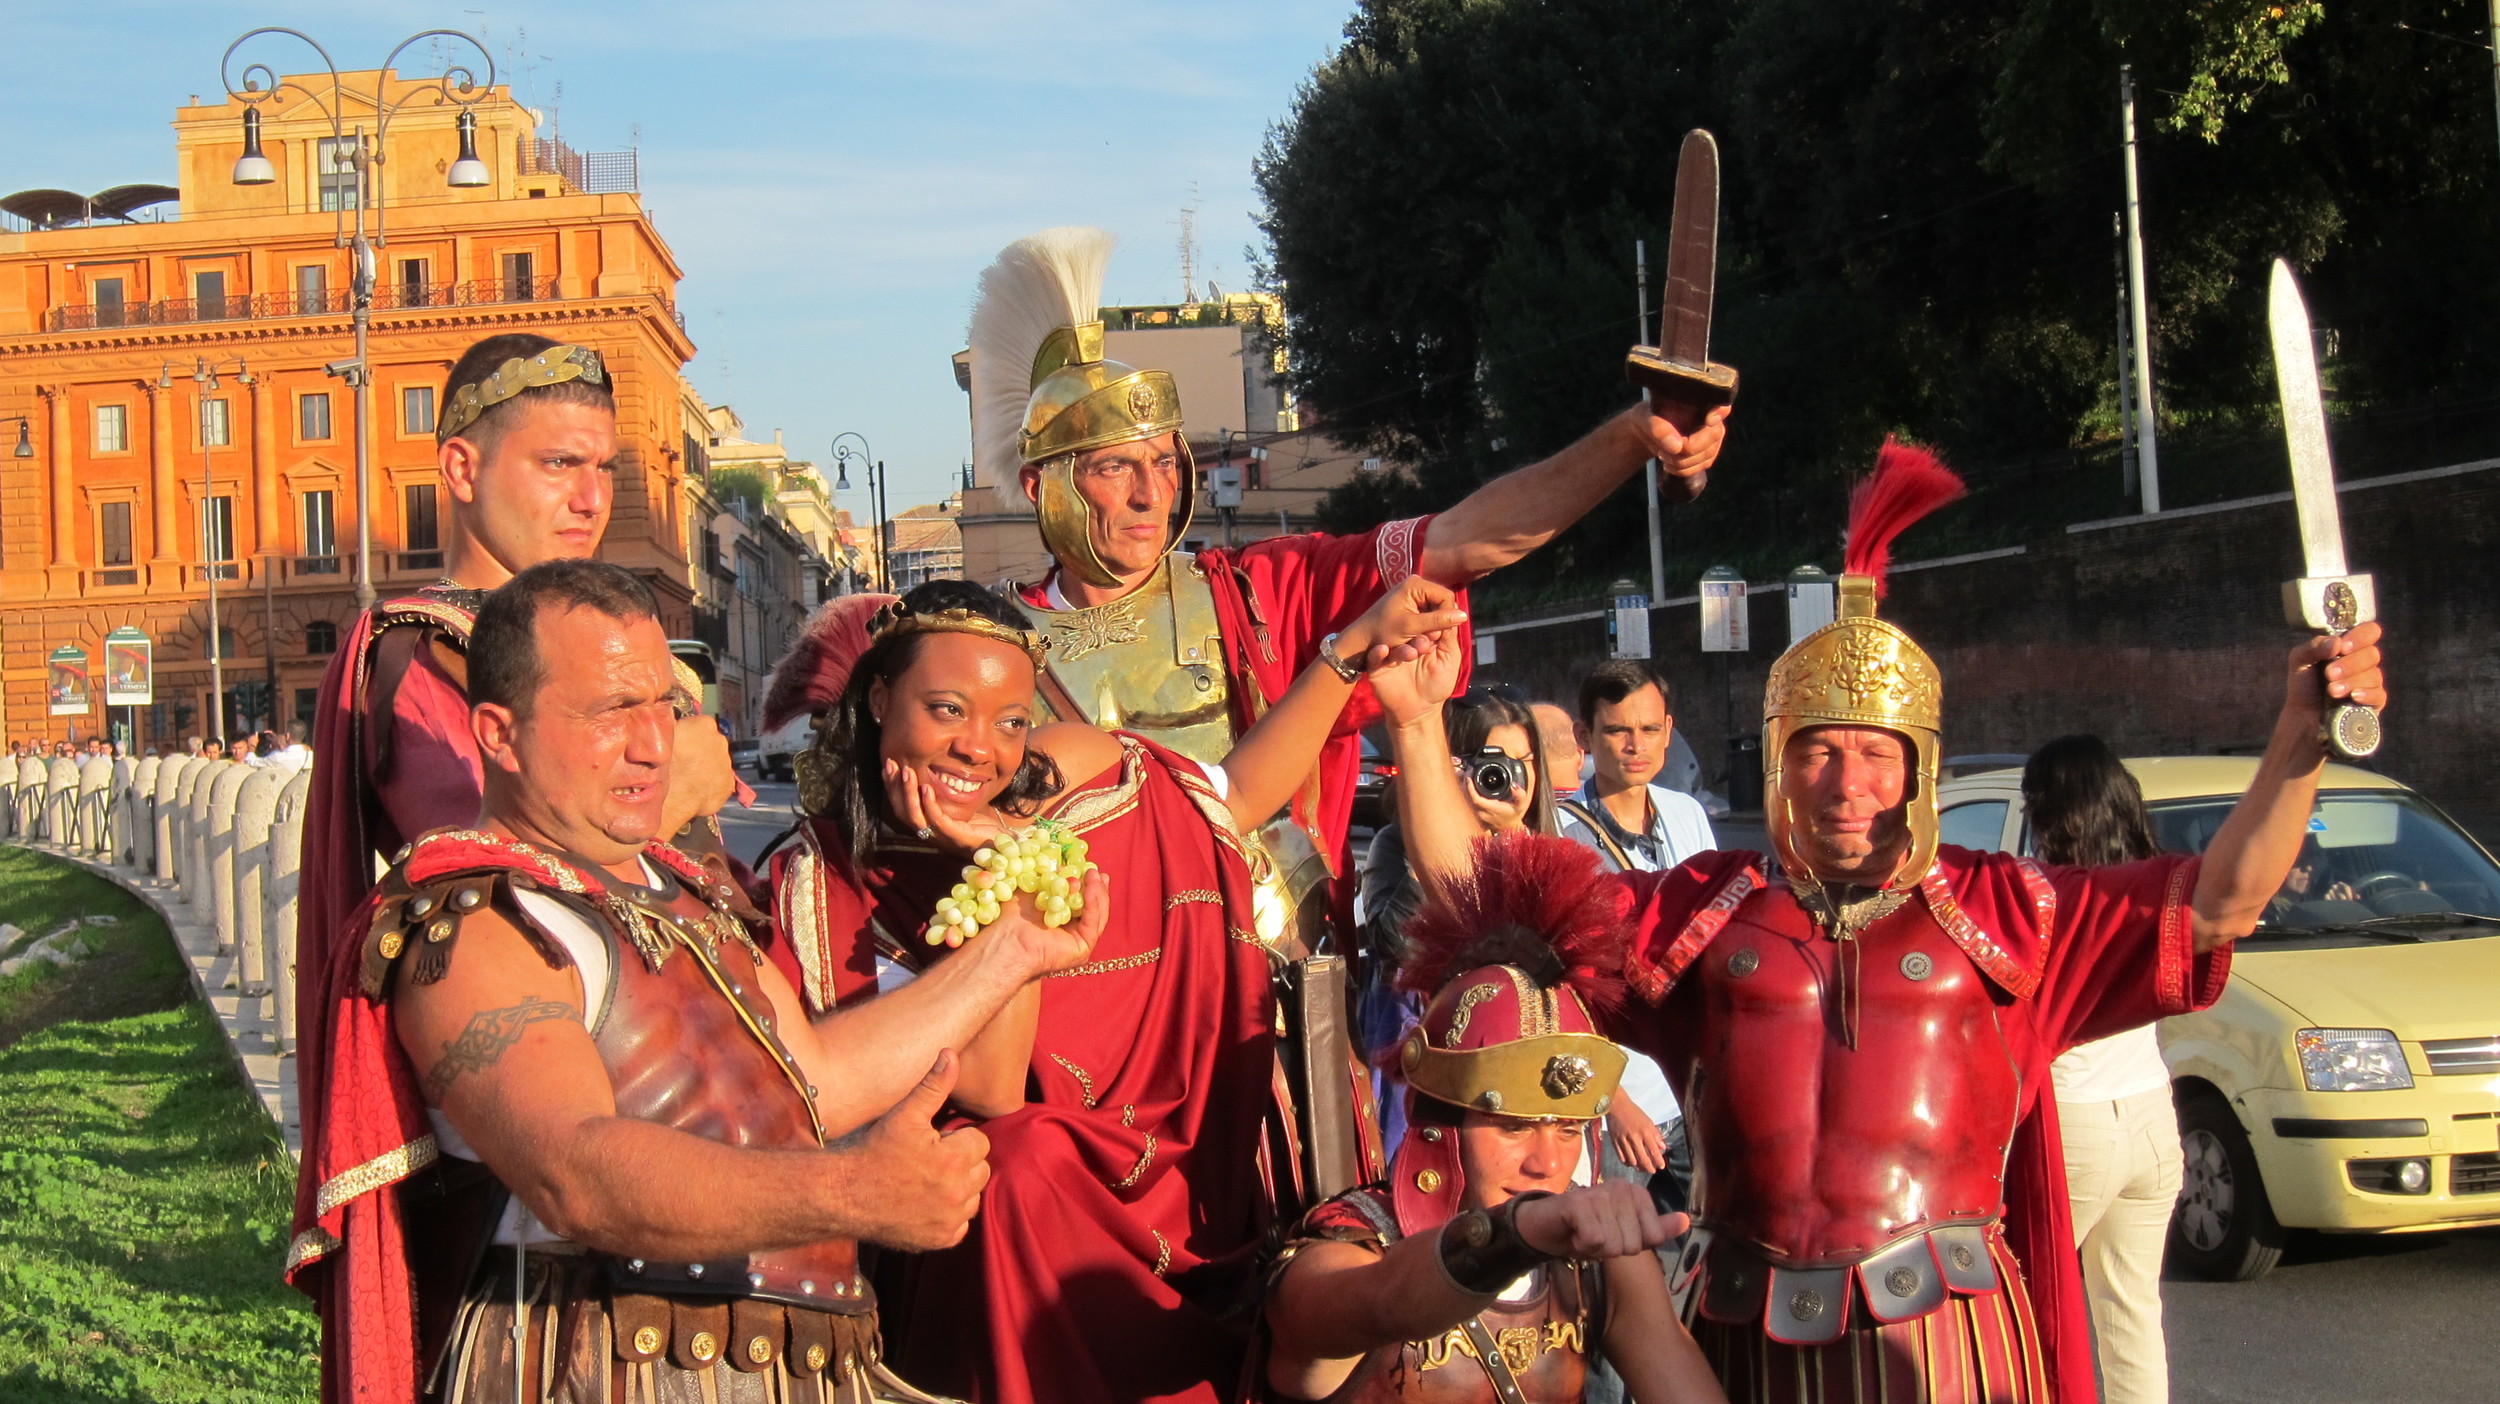   2012, 'Gladiators' in Rome.  